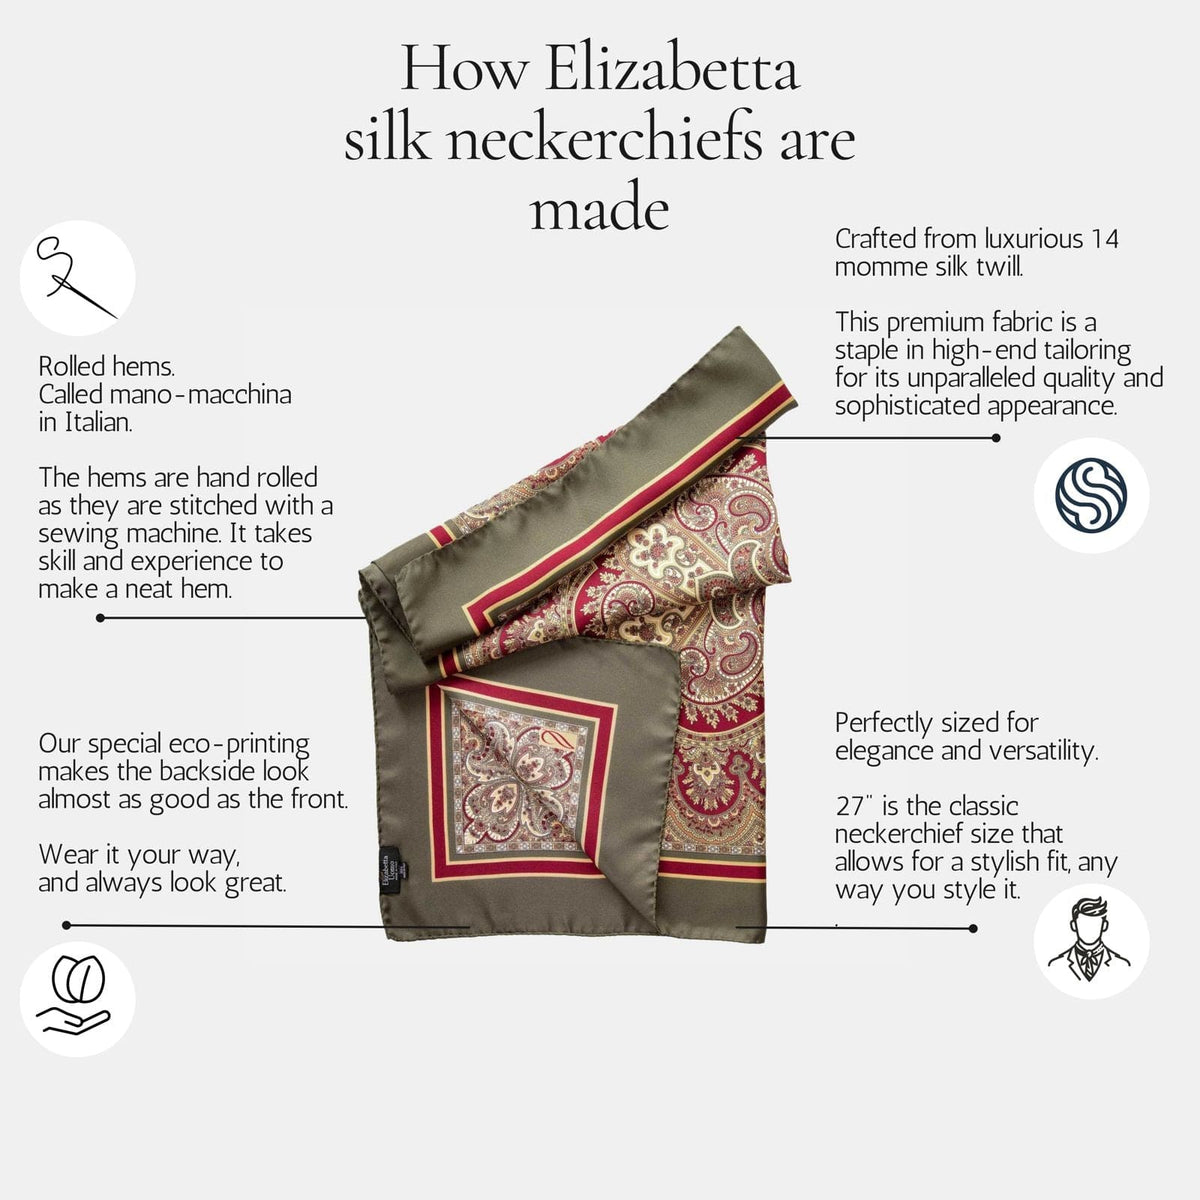 How an Elizabetta silk neckerchief is made